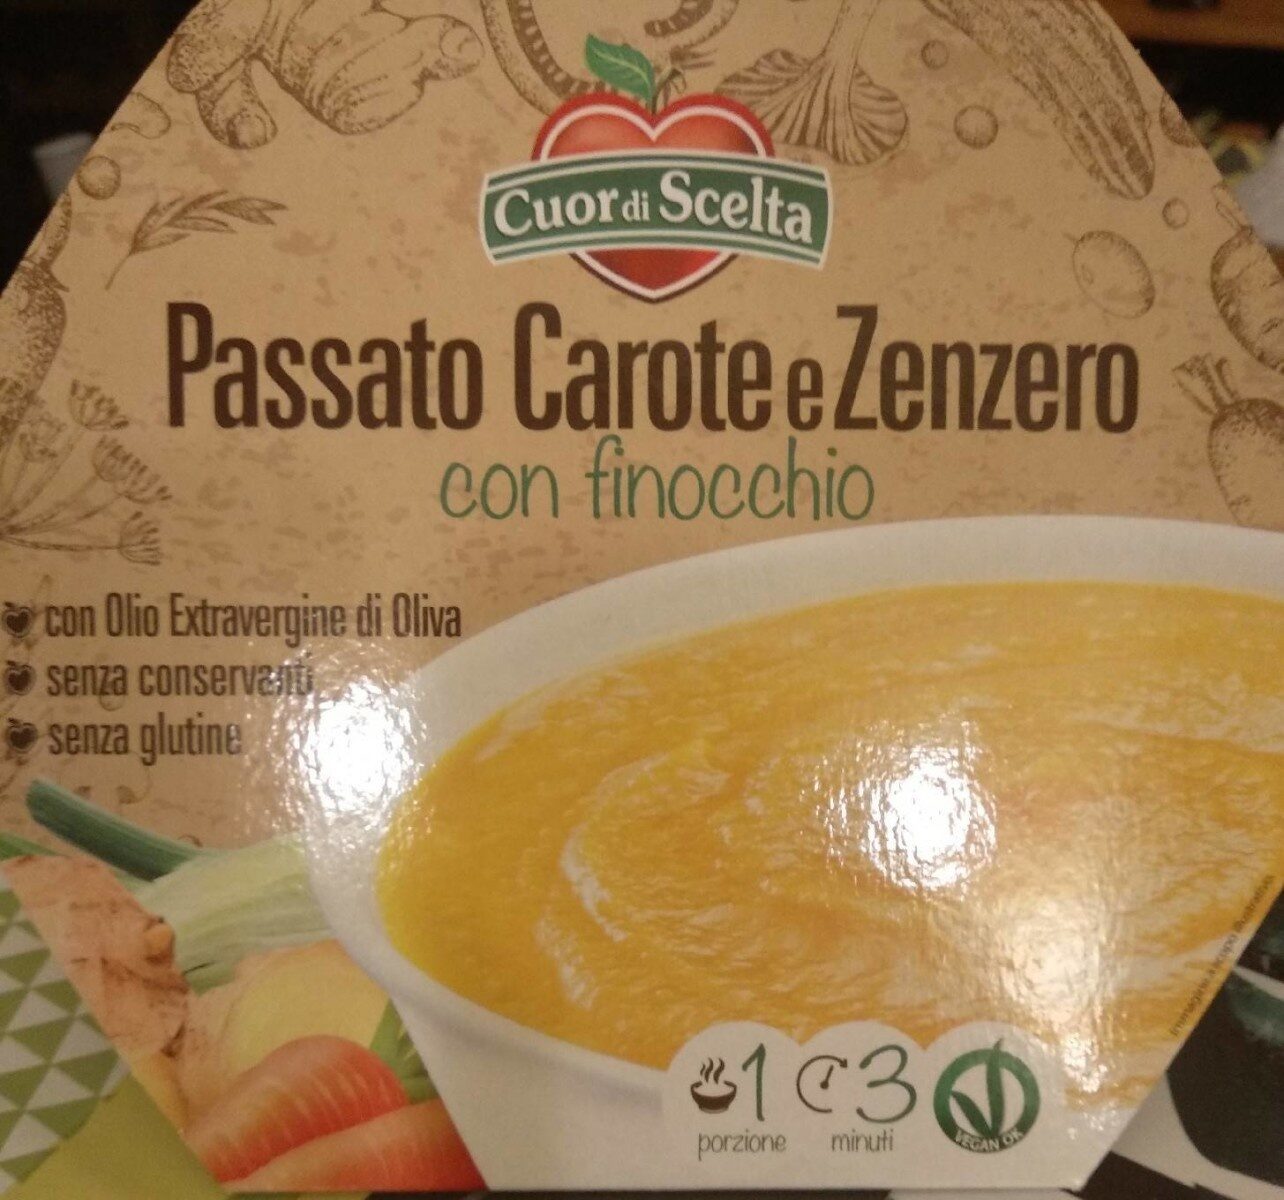 Passato carote e zenzero - Product - it